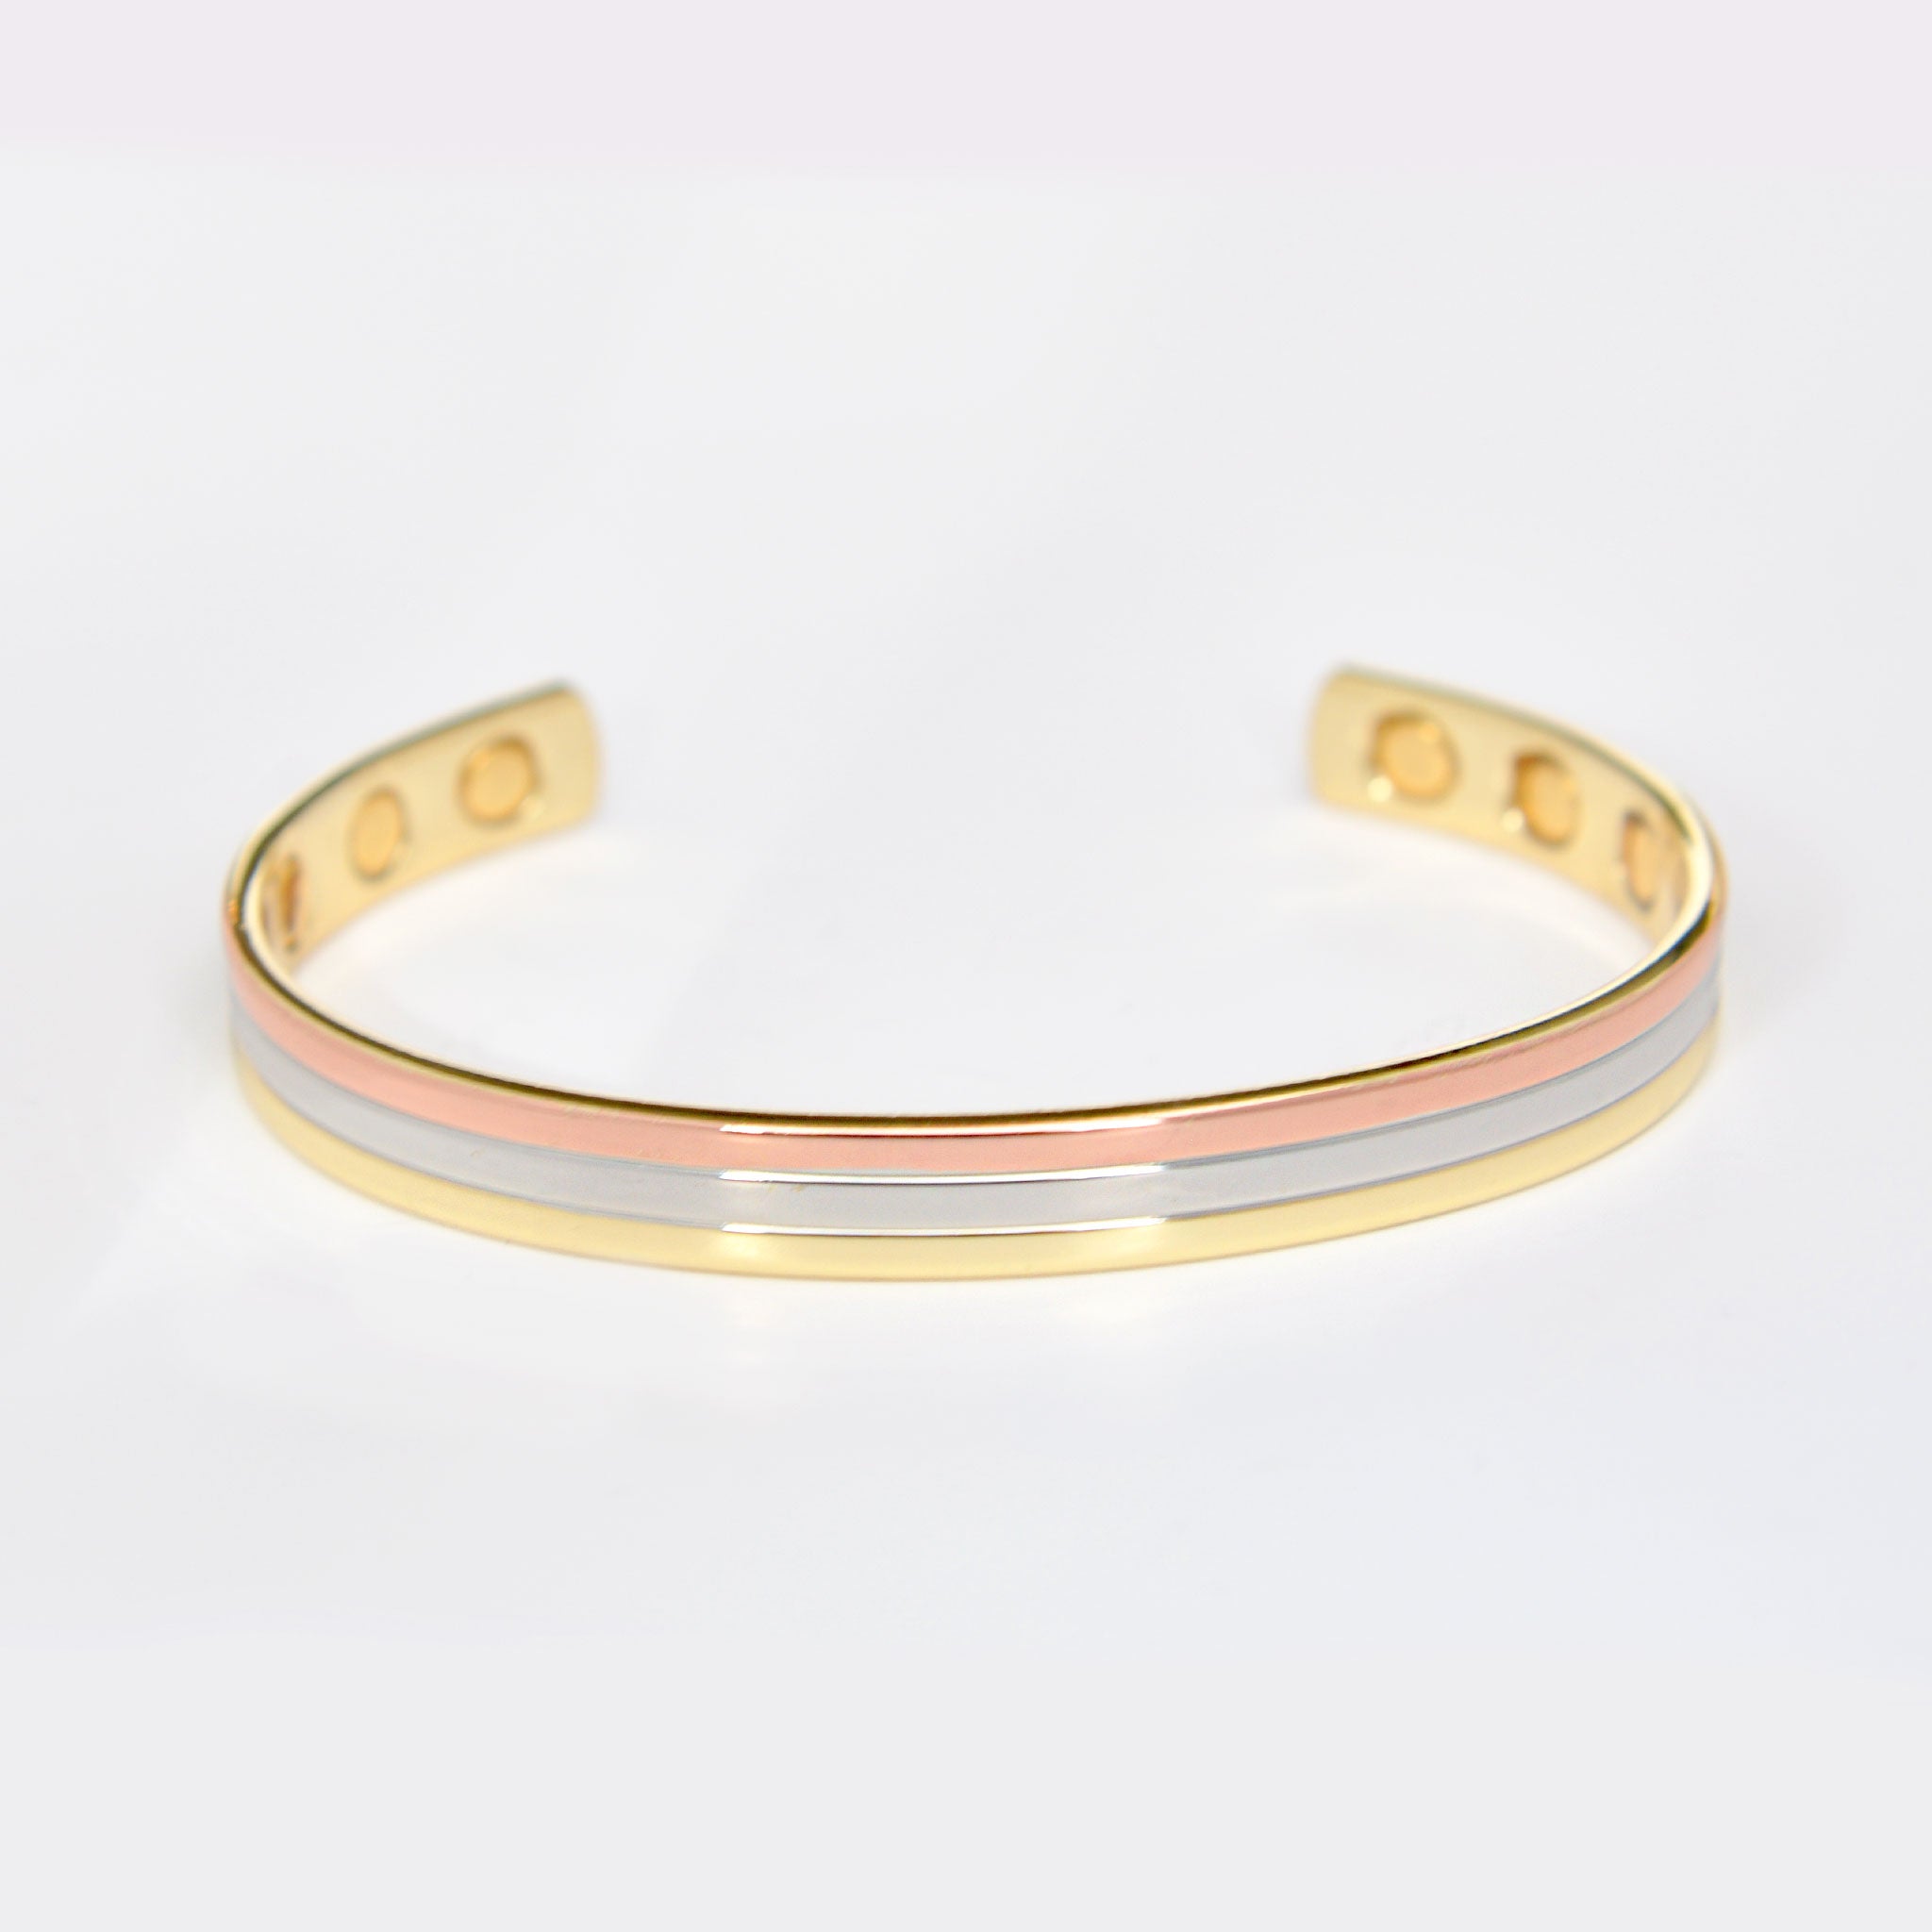 Copper bracelet for Arthritis